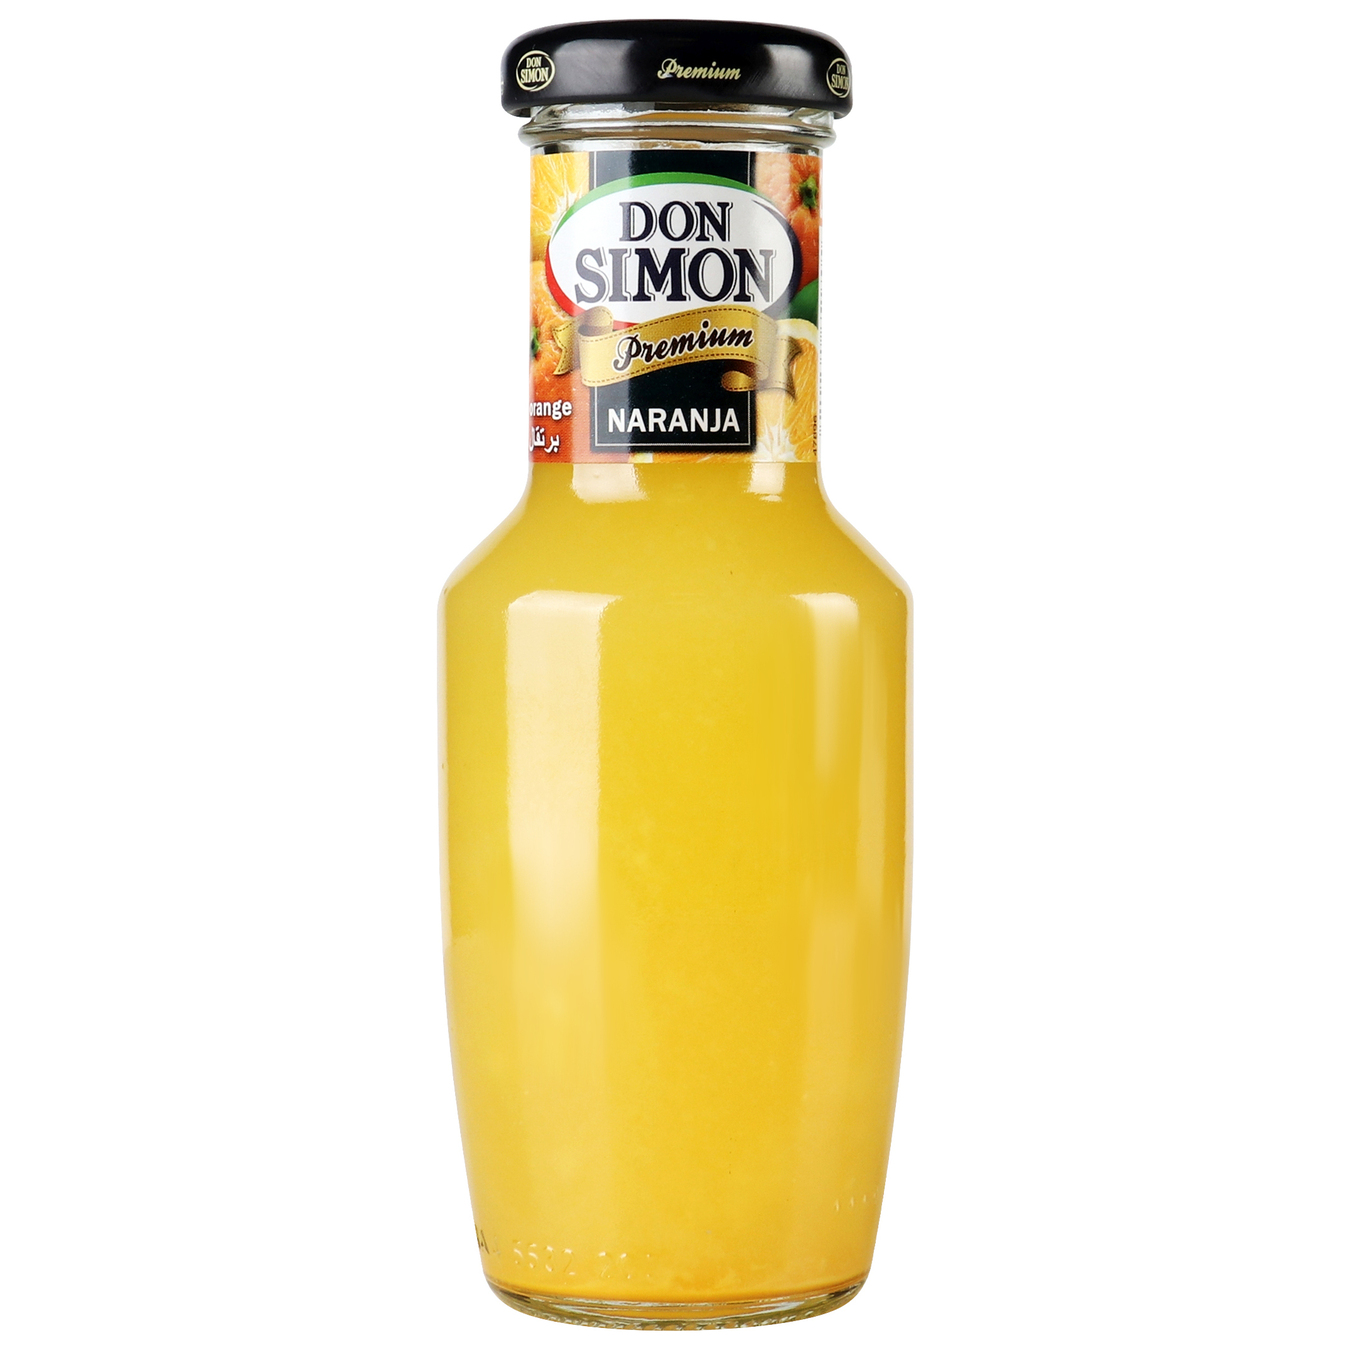 Don Simon orange nectar 0.2 l